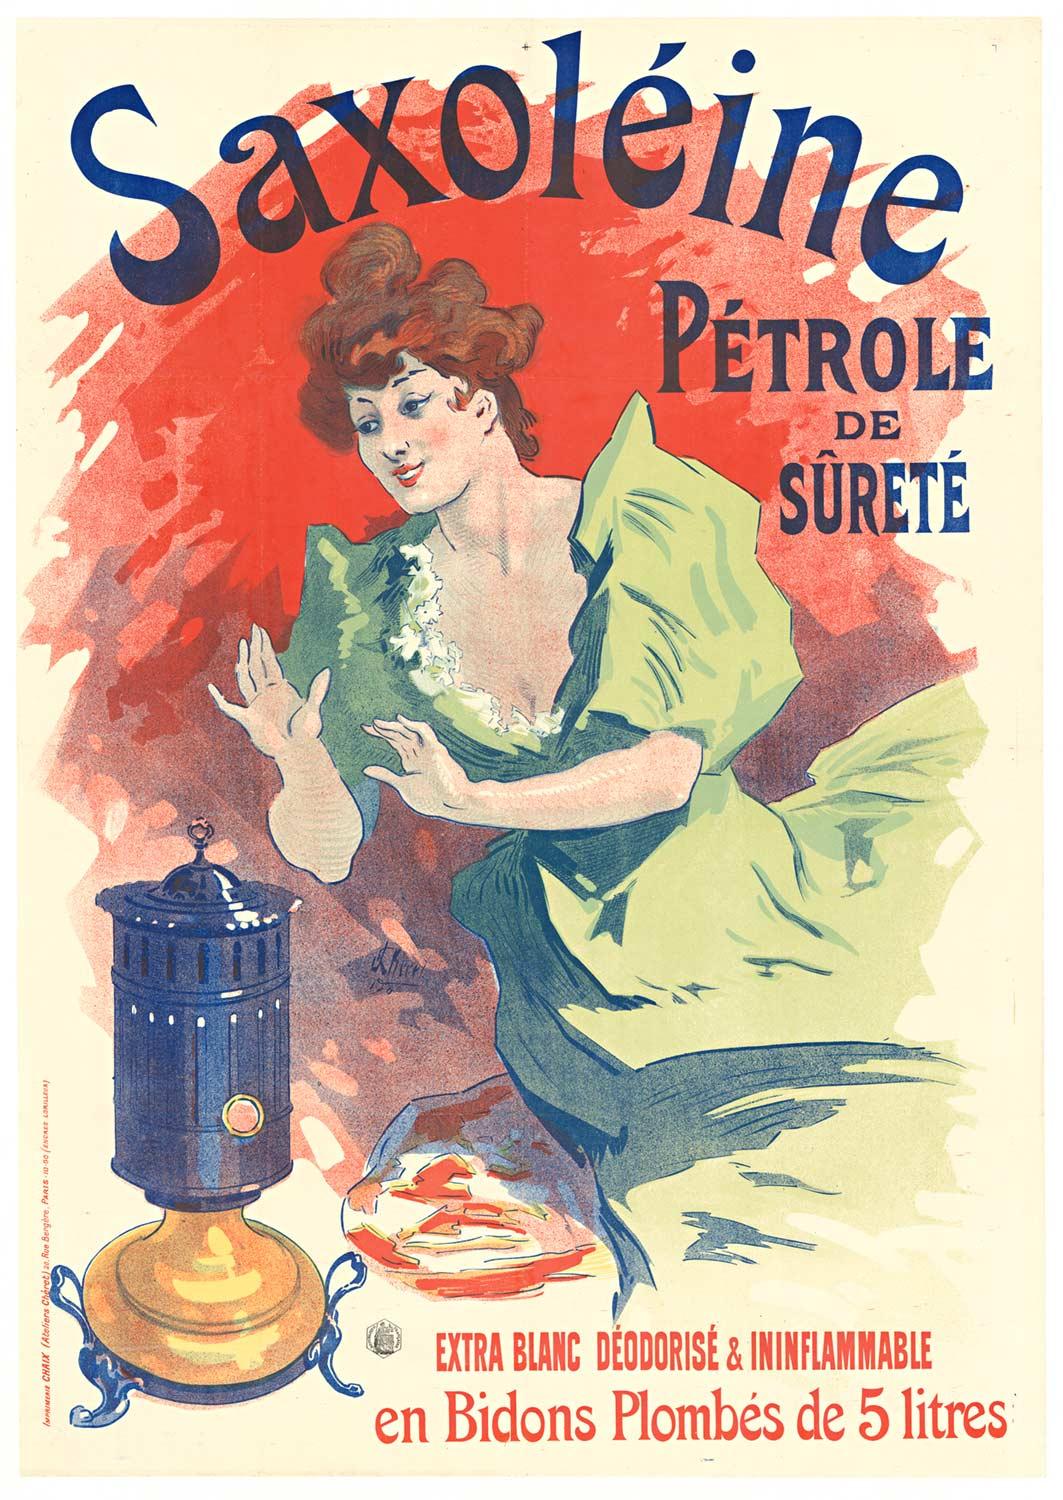 Jules Chéret Portrait Print - Original "Saxoleine Petrole Surete" vintage stone lithograph  1900